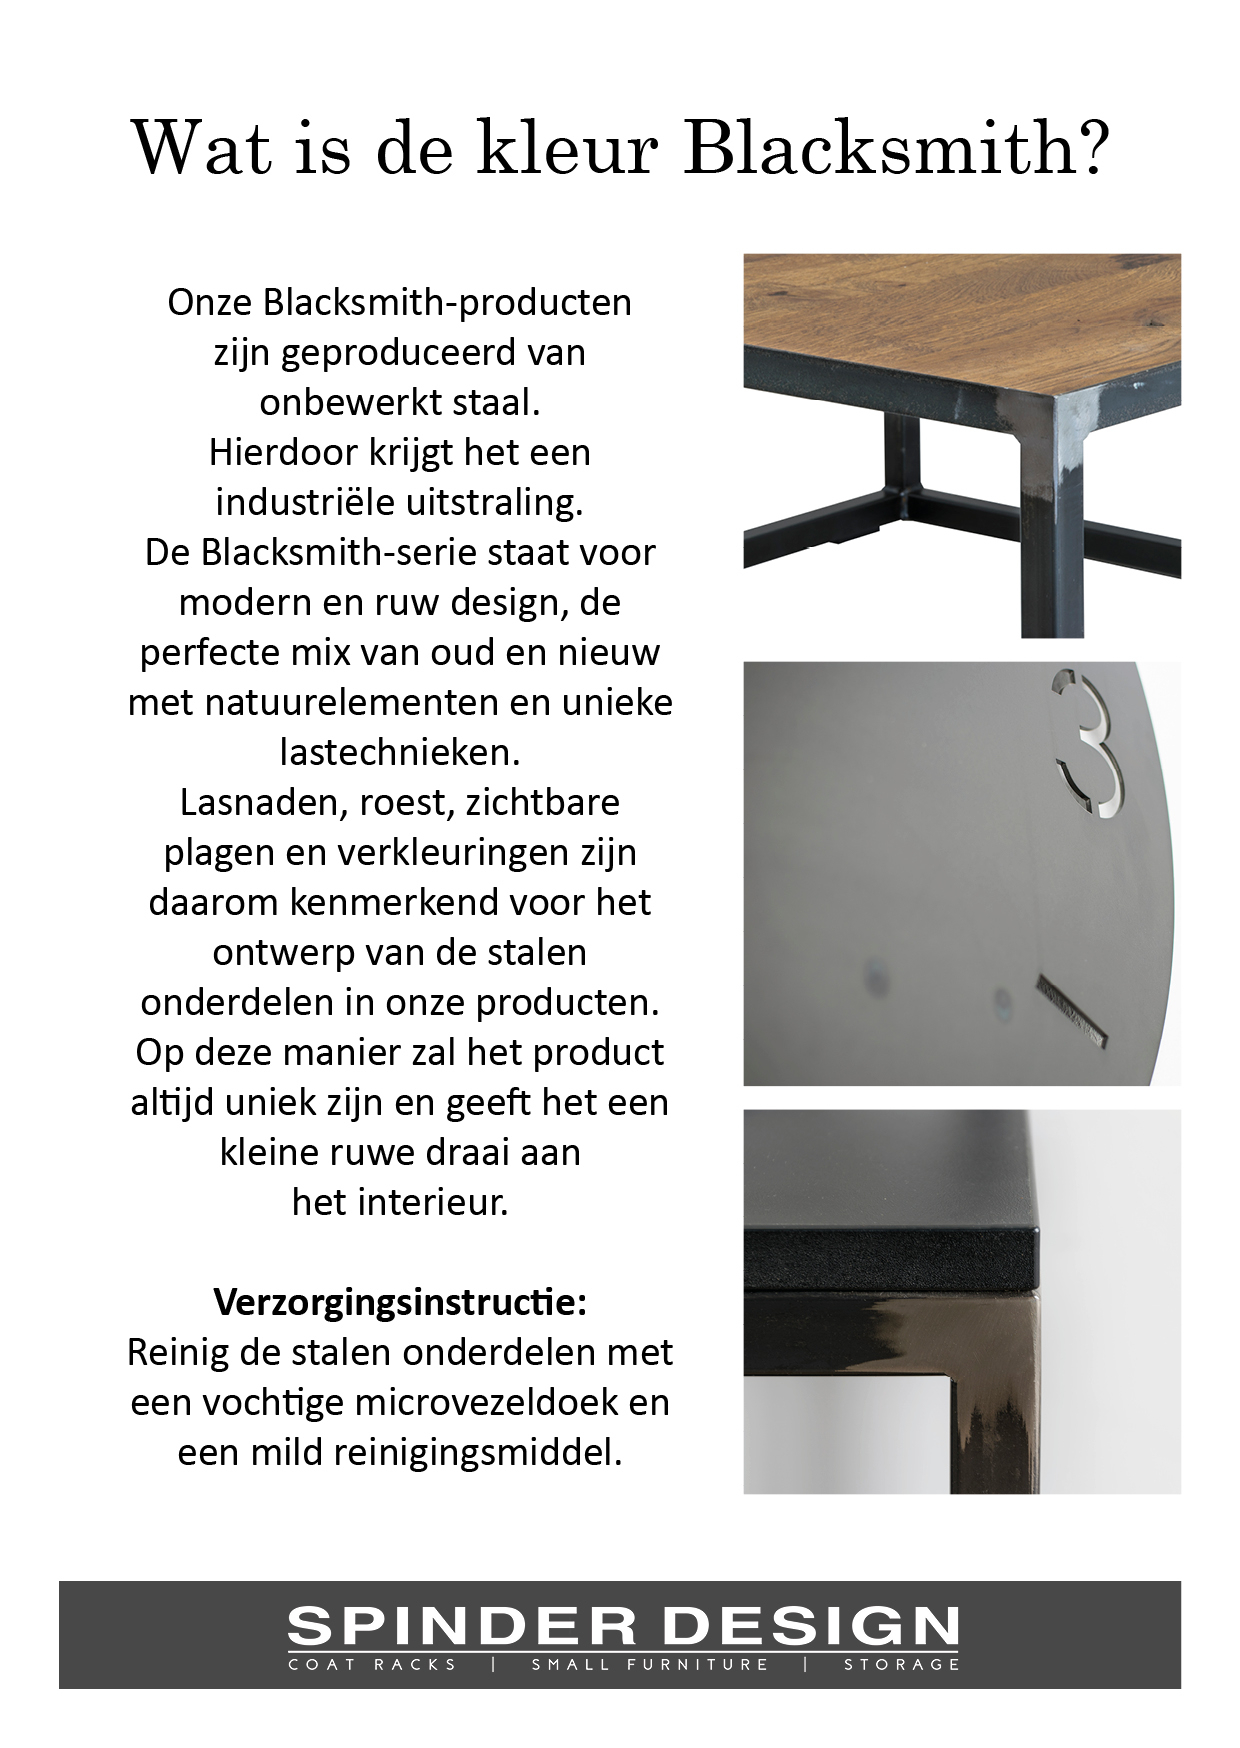 https://www.fundesign.nl/media/catalog/product/b/l/blacksmith_informatie_52.jpg